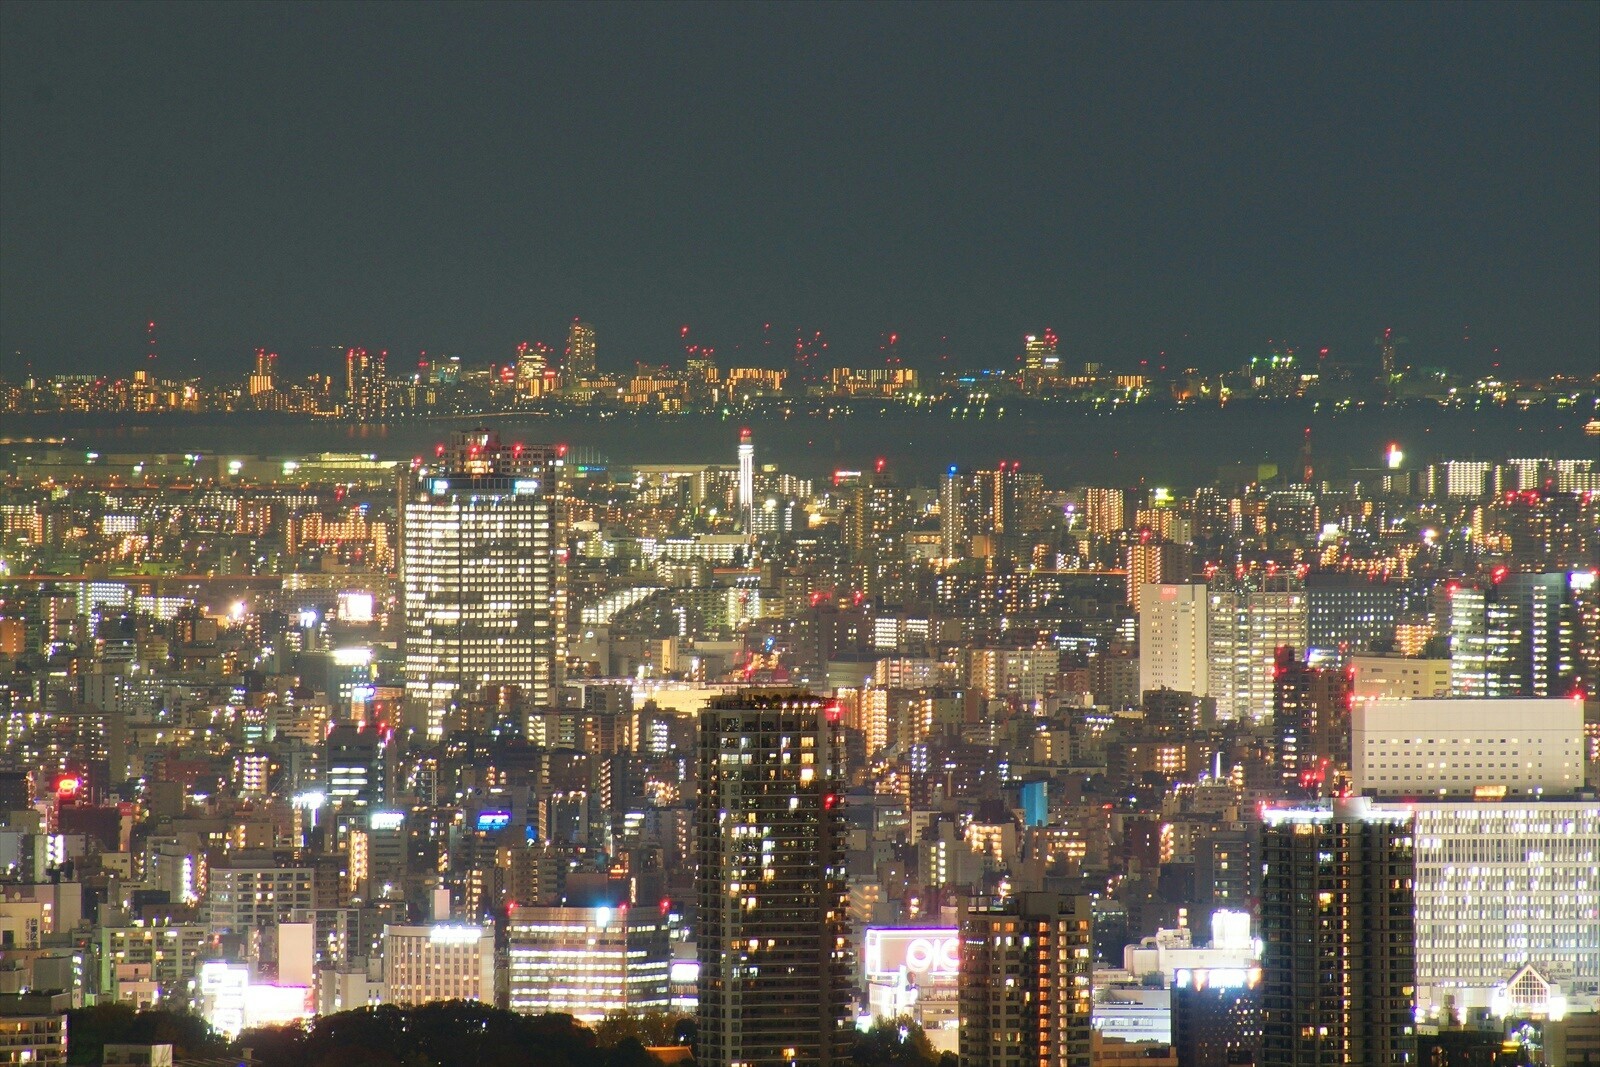 サンシャイン60展望台から見た夜景part2 東京都心 丸の内 六本木 湾岸 スカイツリー方面の景色 風景写真